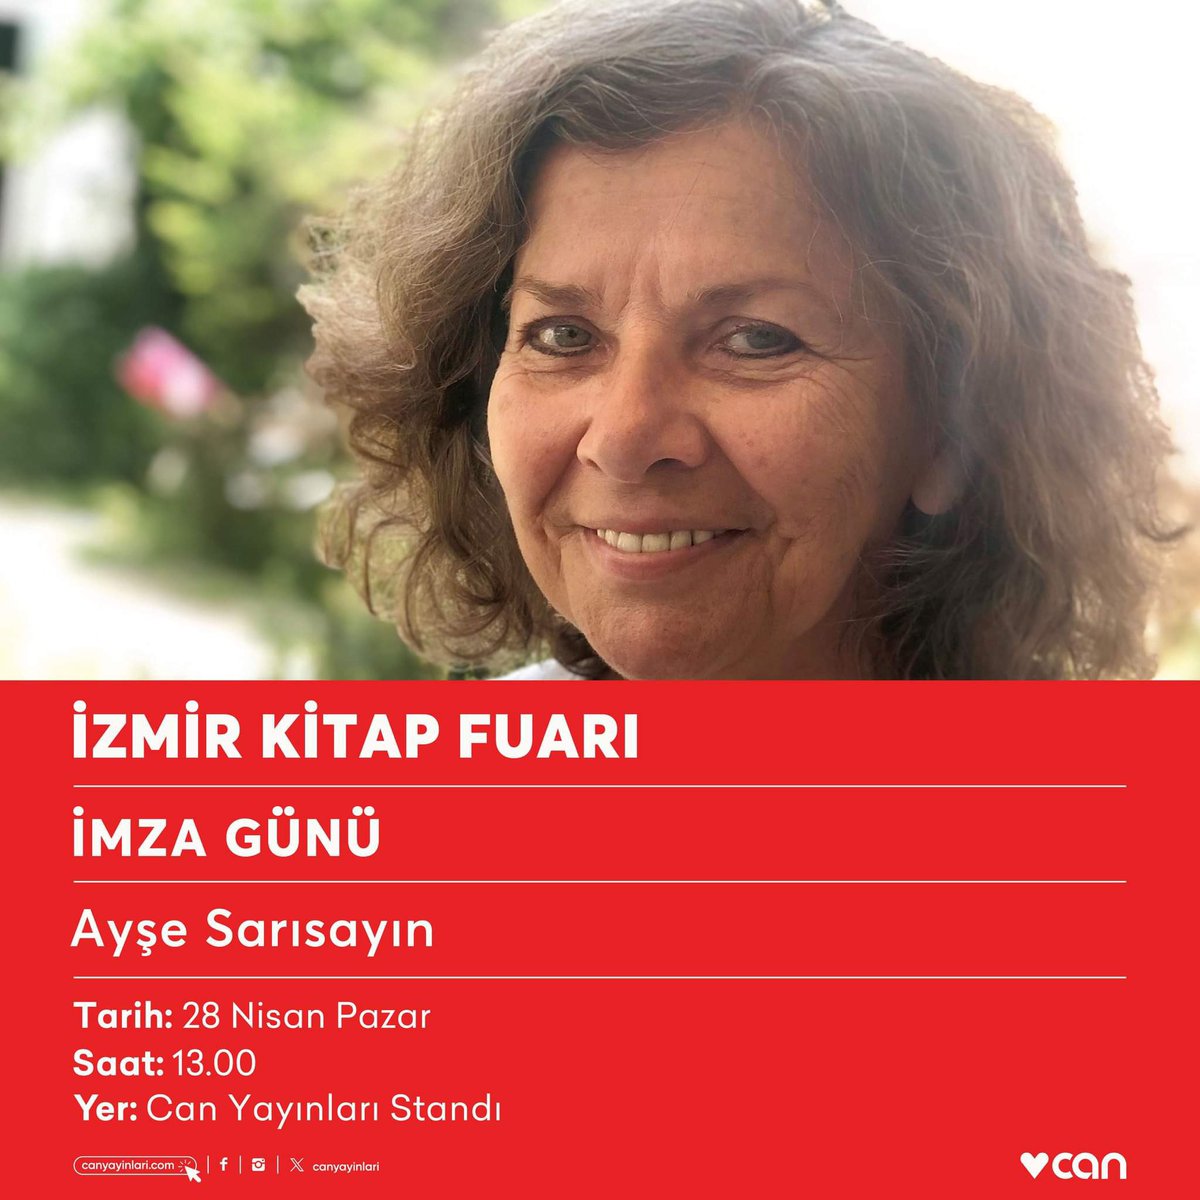 Ayşe Sarısayın, bugün saat 13.00’te #İzmirKitapFuarı Can Yayınları standında kitaplarını imzalayacak.